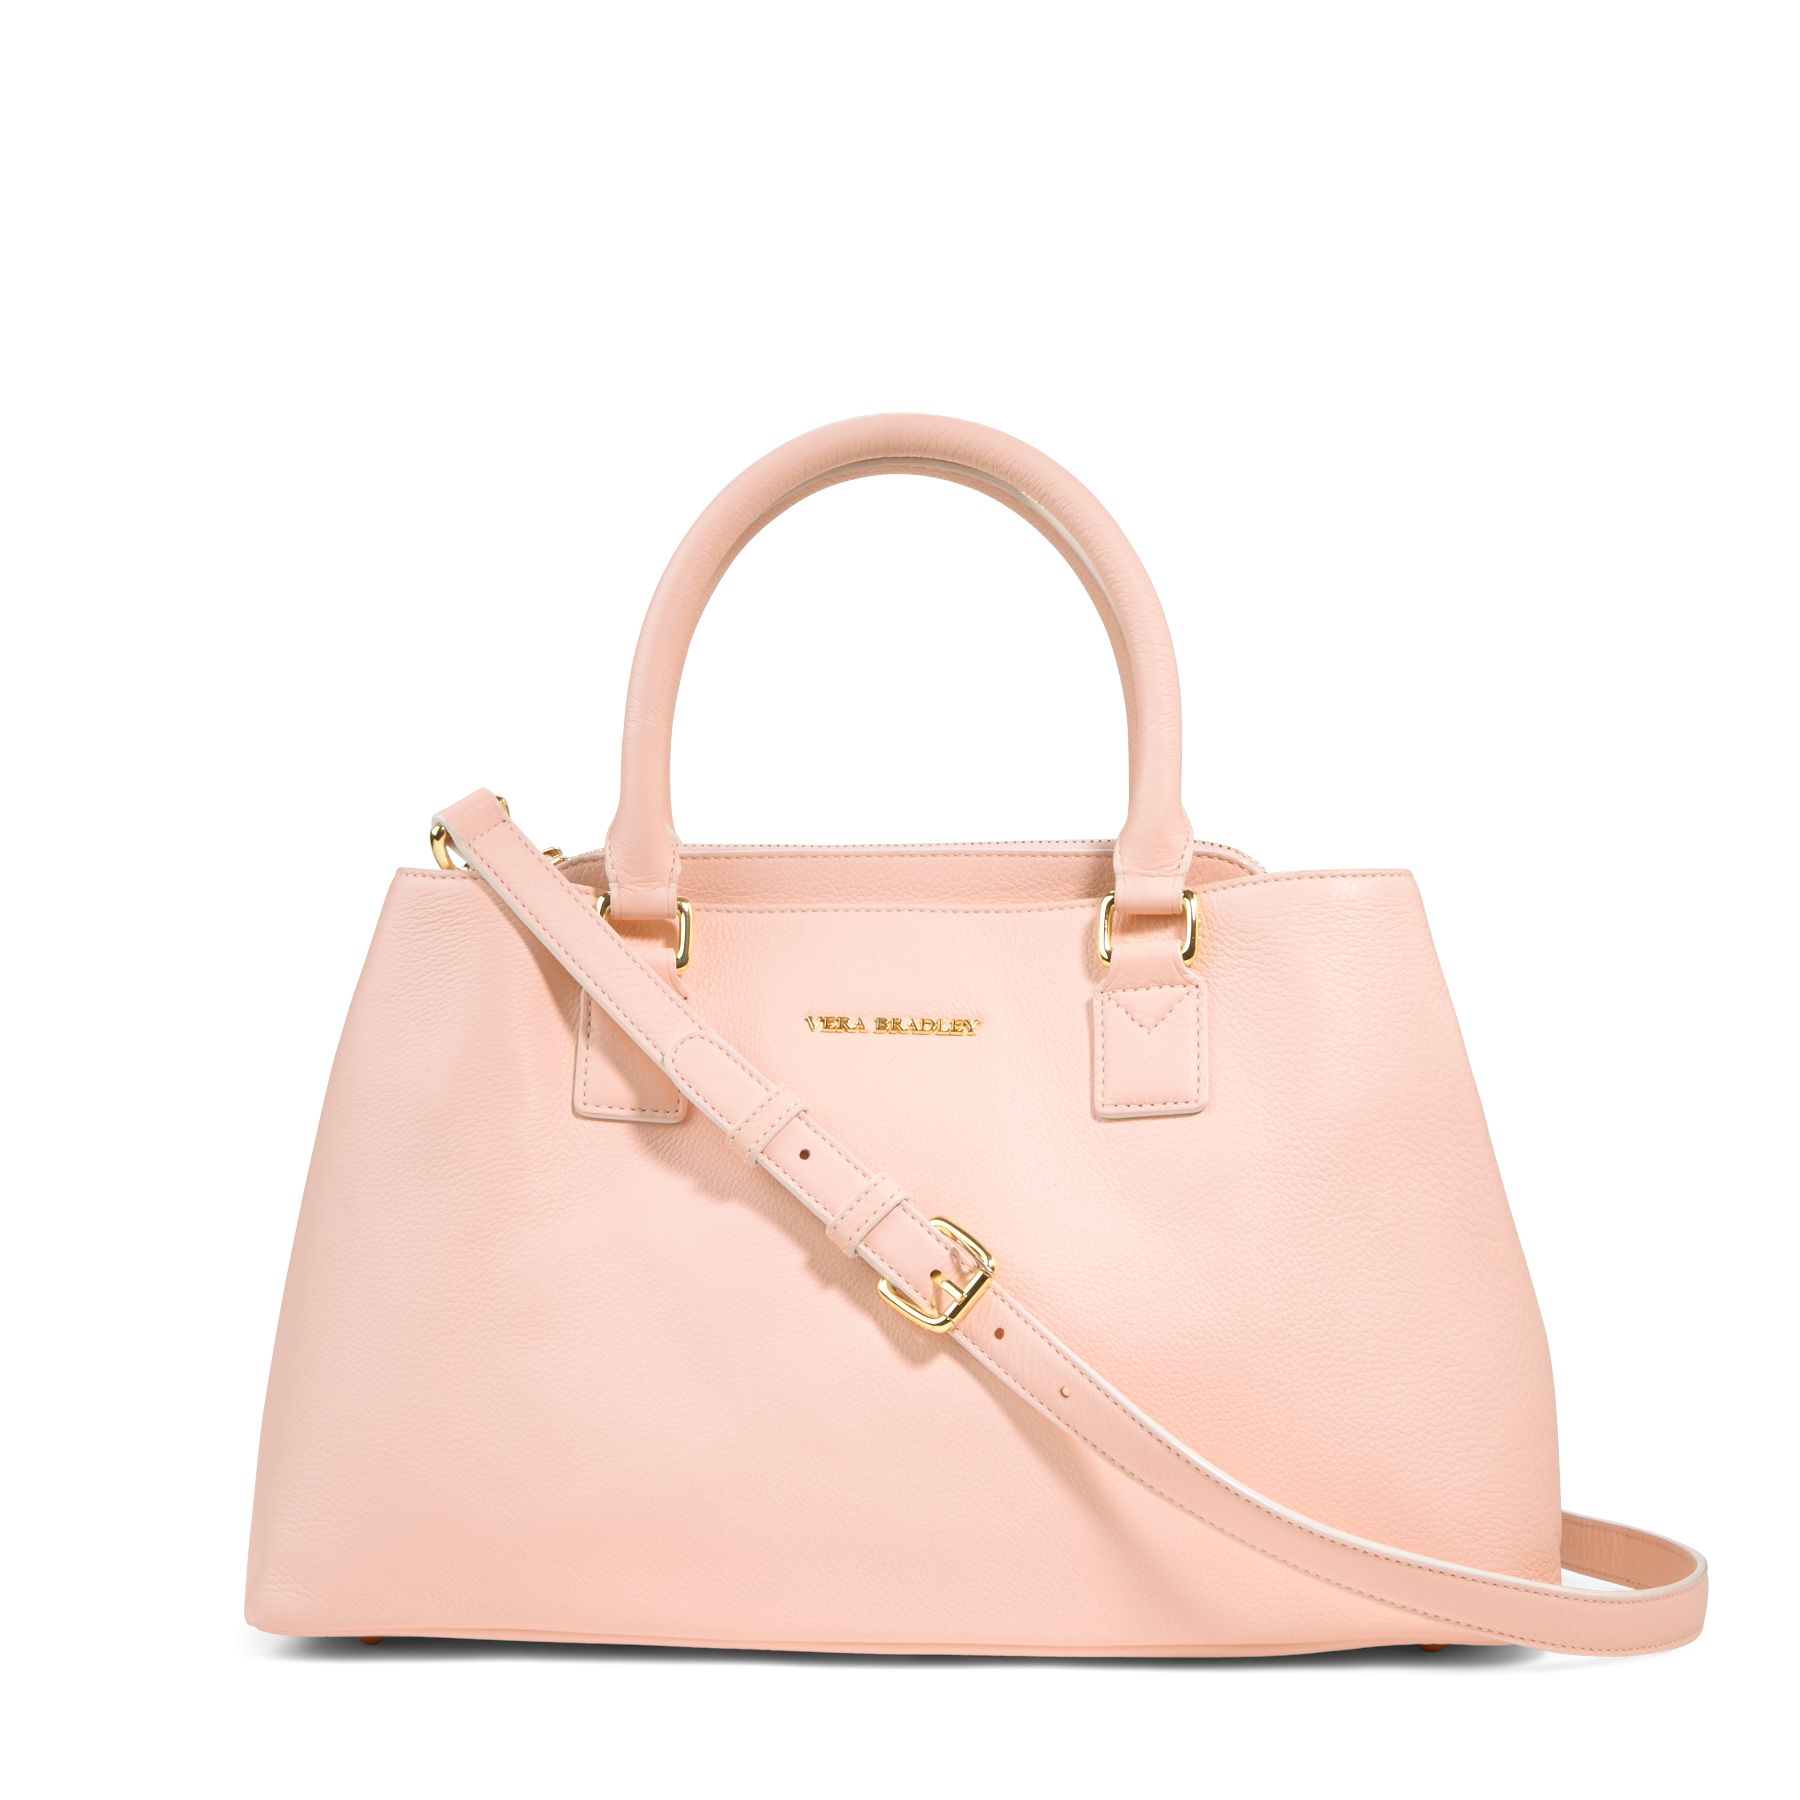 Vera Bradley Leather Emma Satchel Bag | eBay